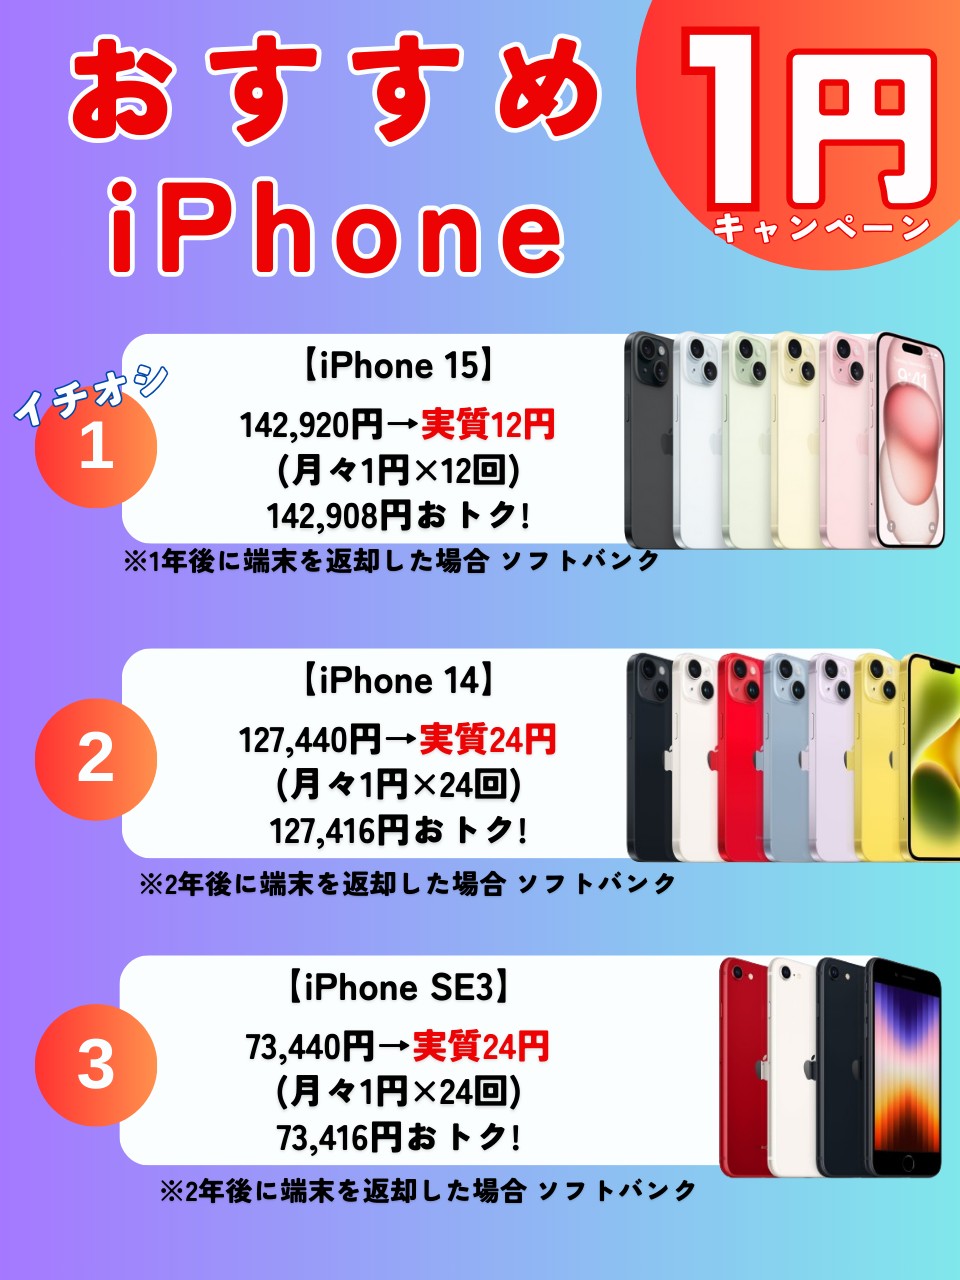 1円iPhone campaign